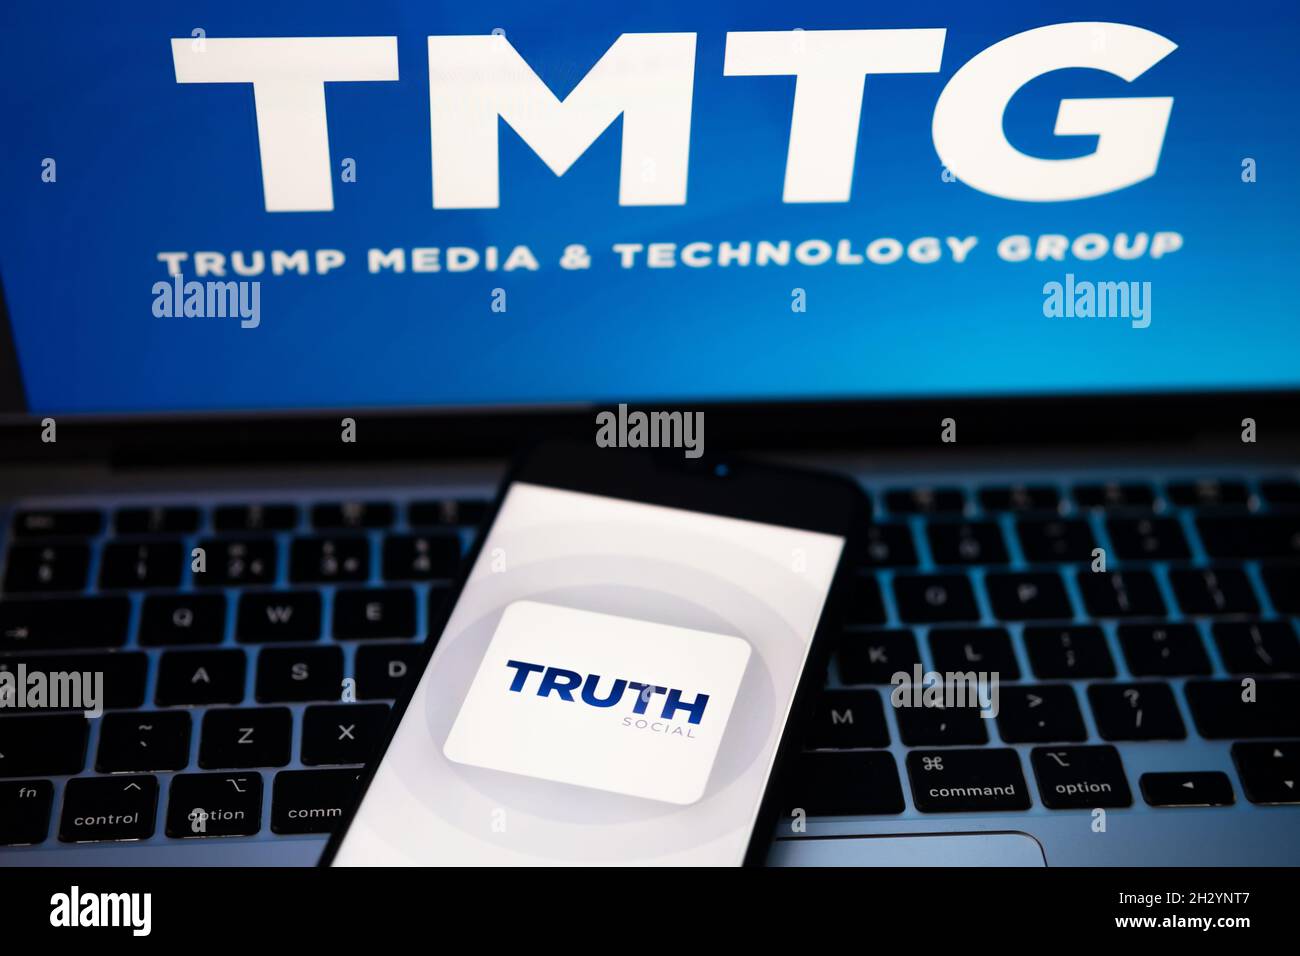 Il logo dell'app sociale verità è visibile sullo smartphone e il logo TMTG è sfocato sul laptop. Nuova piattaforma di social media di Donald Trump. Stafford, Regno Unito Foto Stock